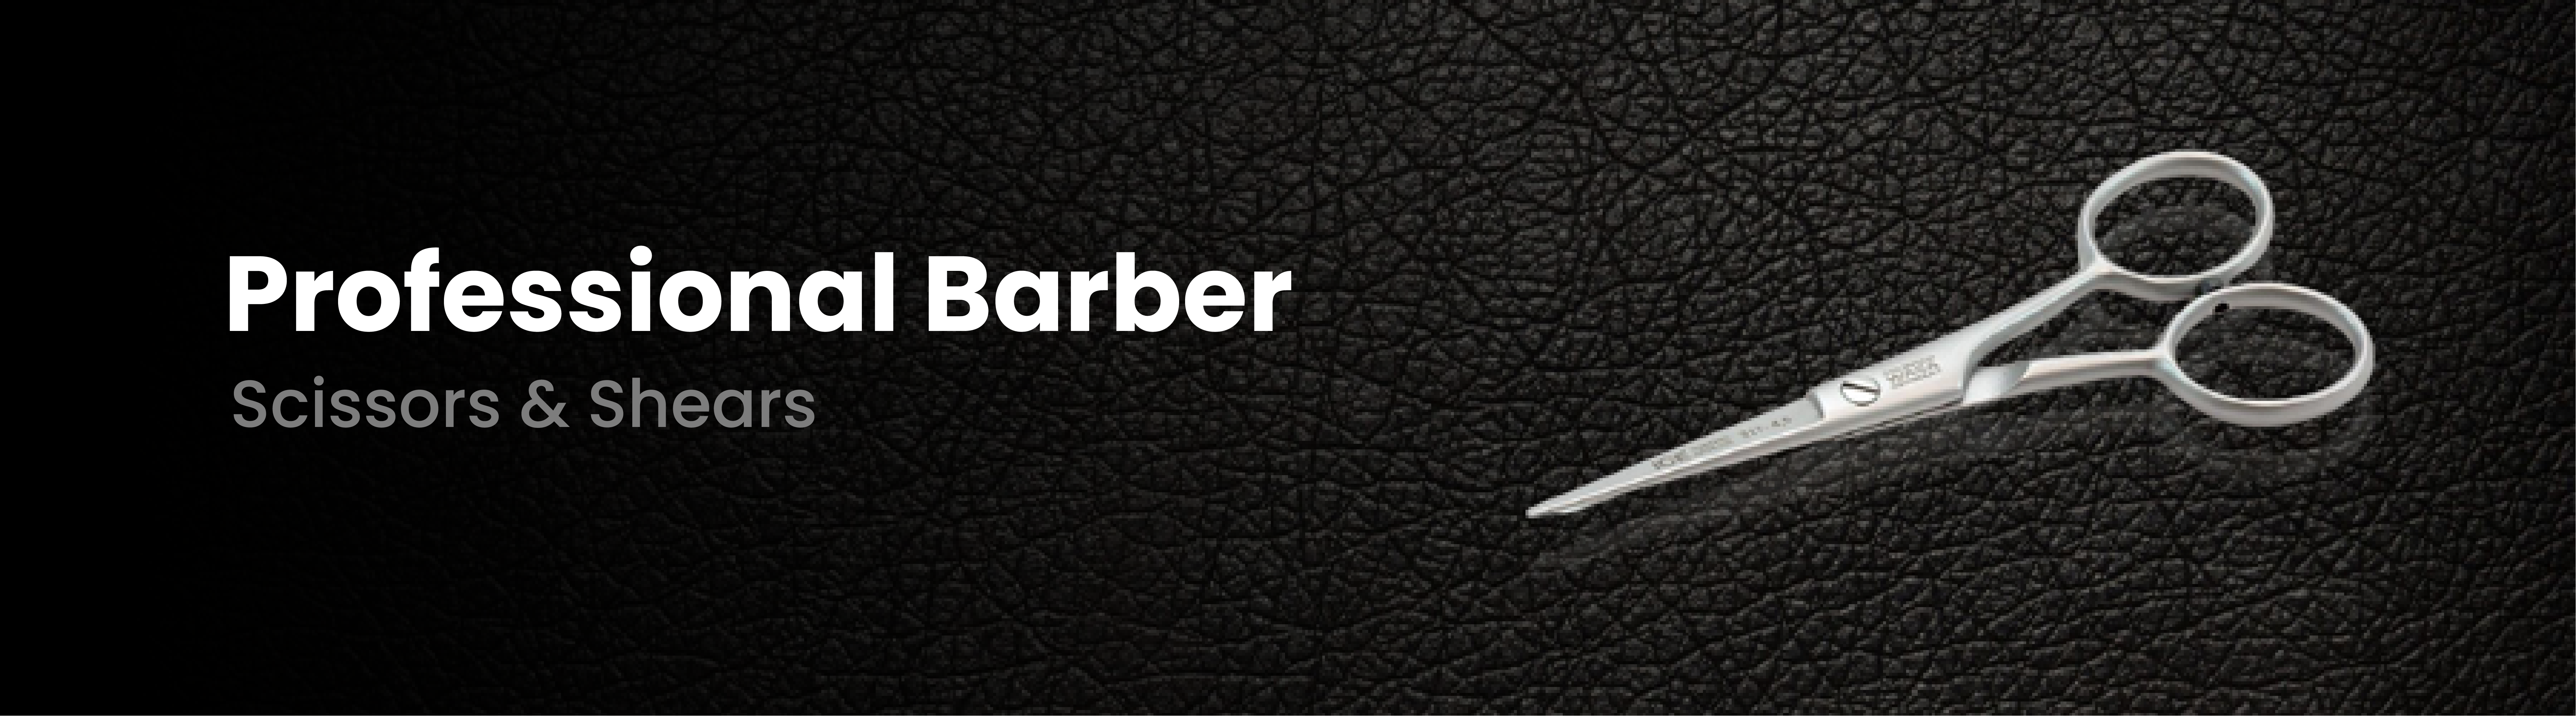 Barber Scissors & Shears